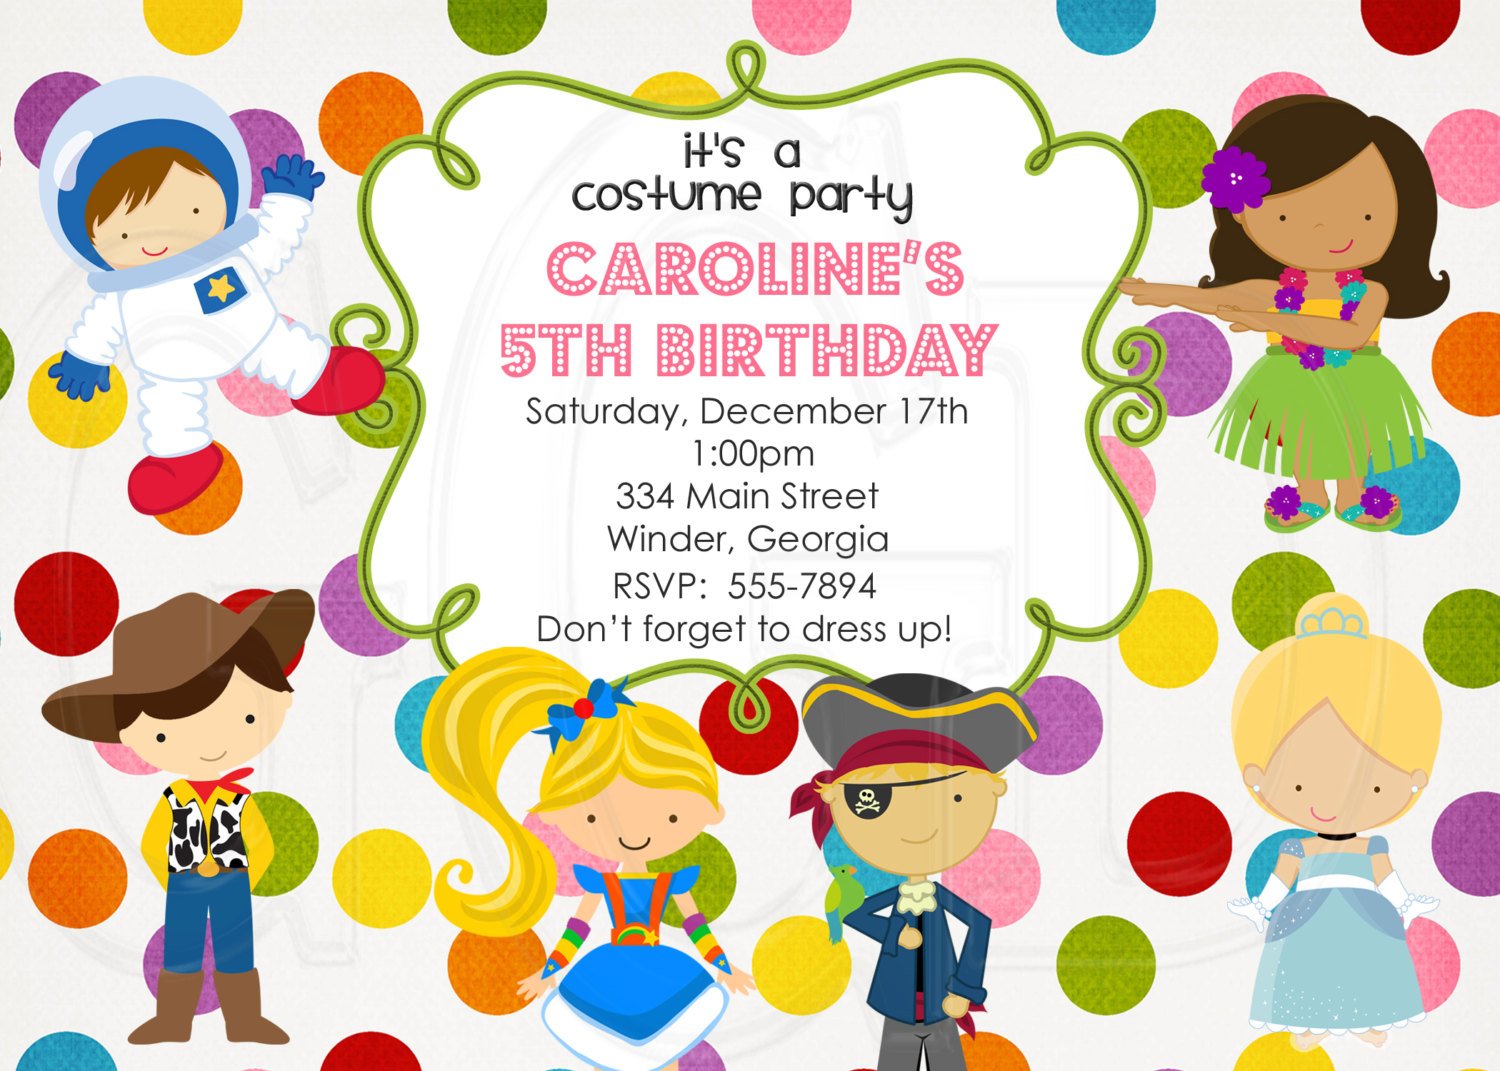 Costume Party Invite